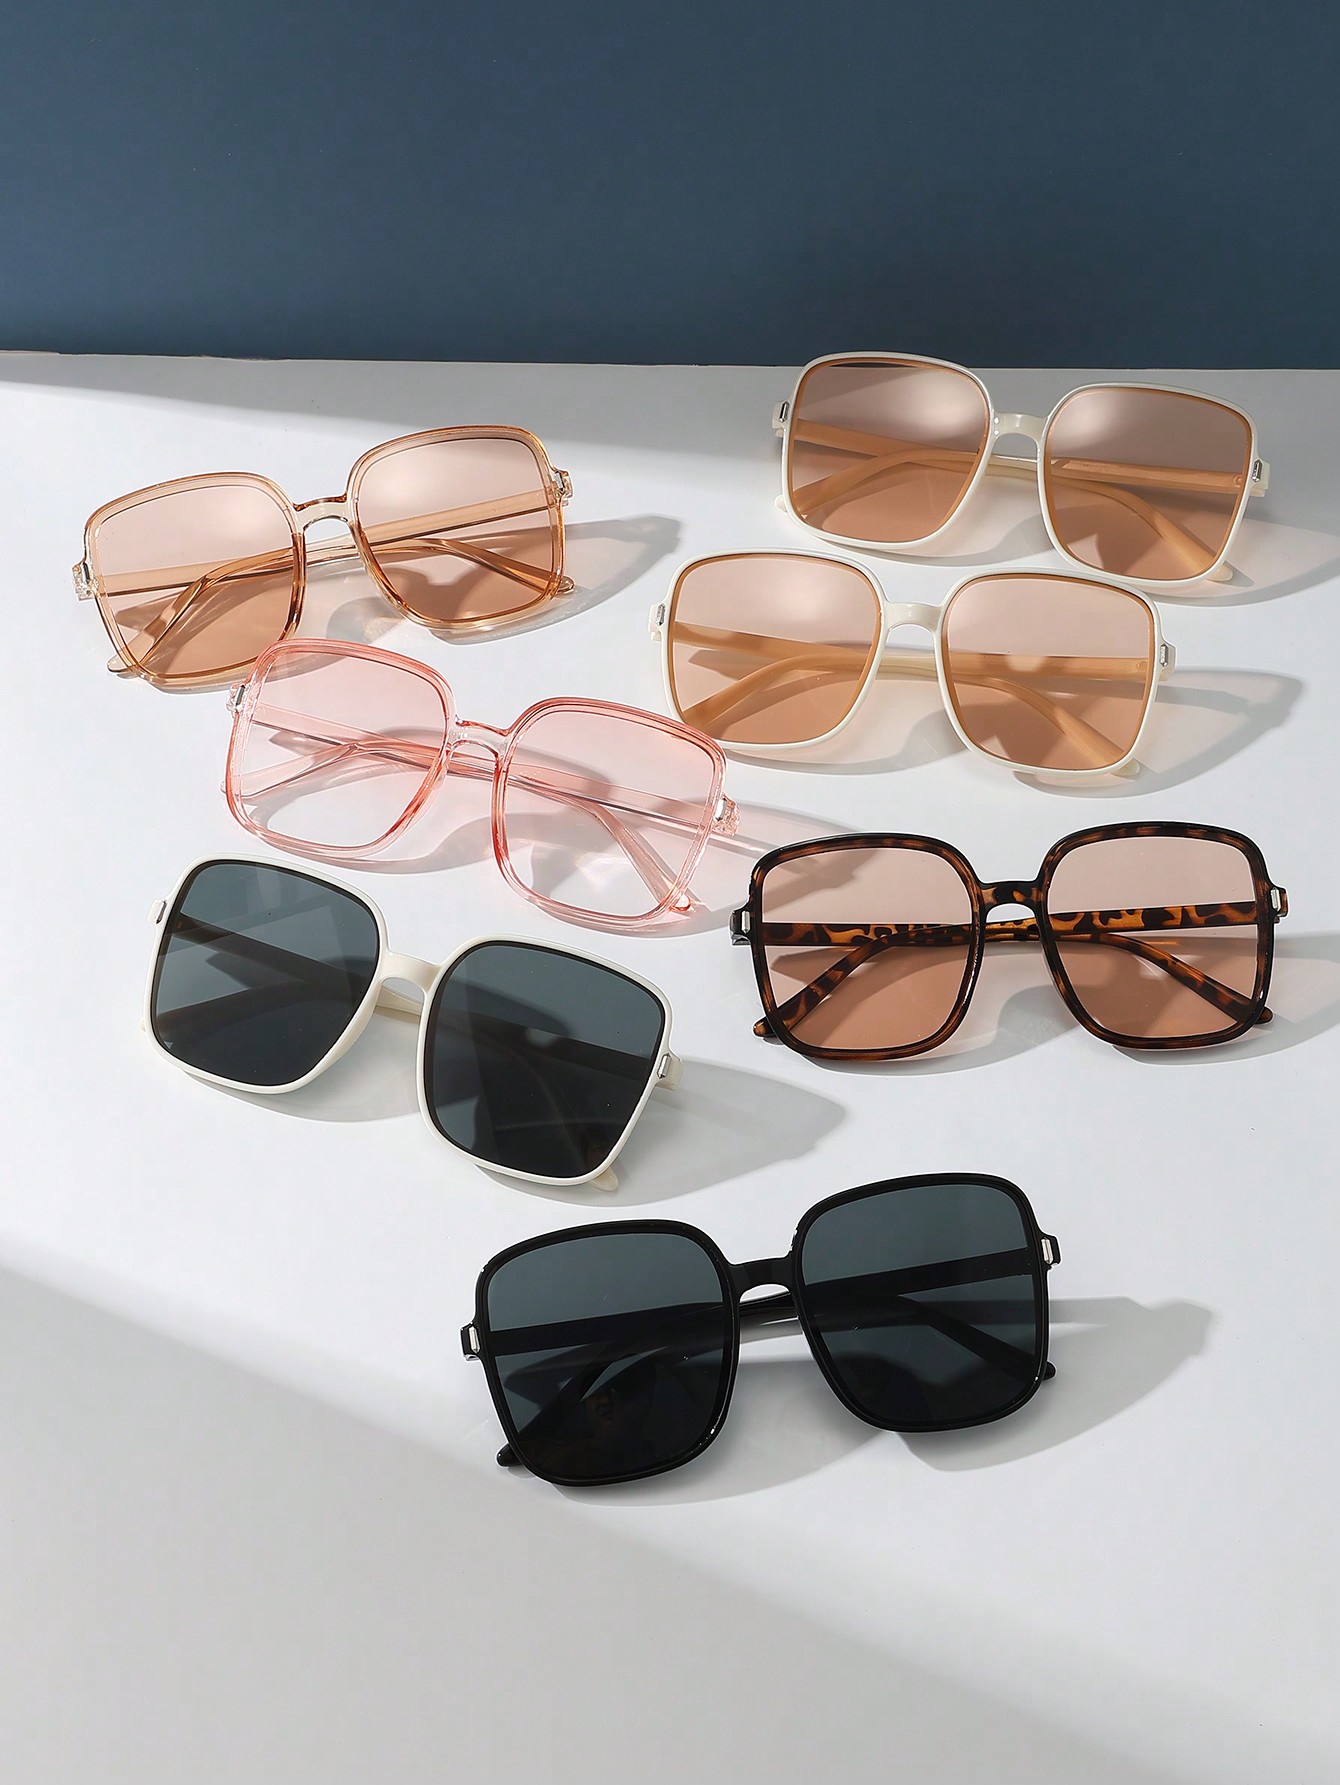 7шт винтажные квадратные большие солнцезащитные очки для мужчин и женщин солнцезащитные очки квадратные оправа пластик черепаховый